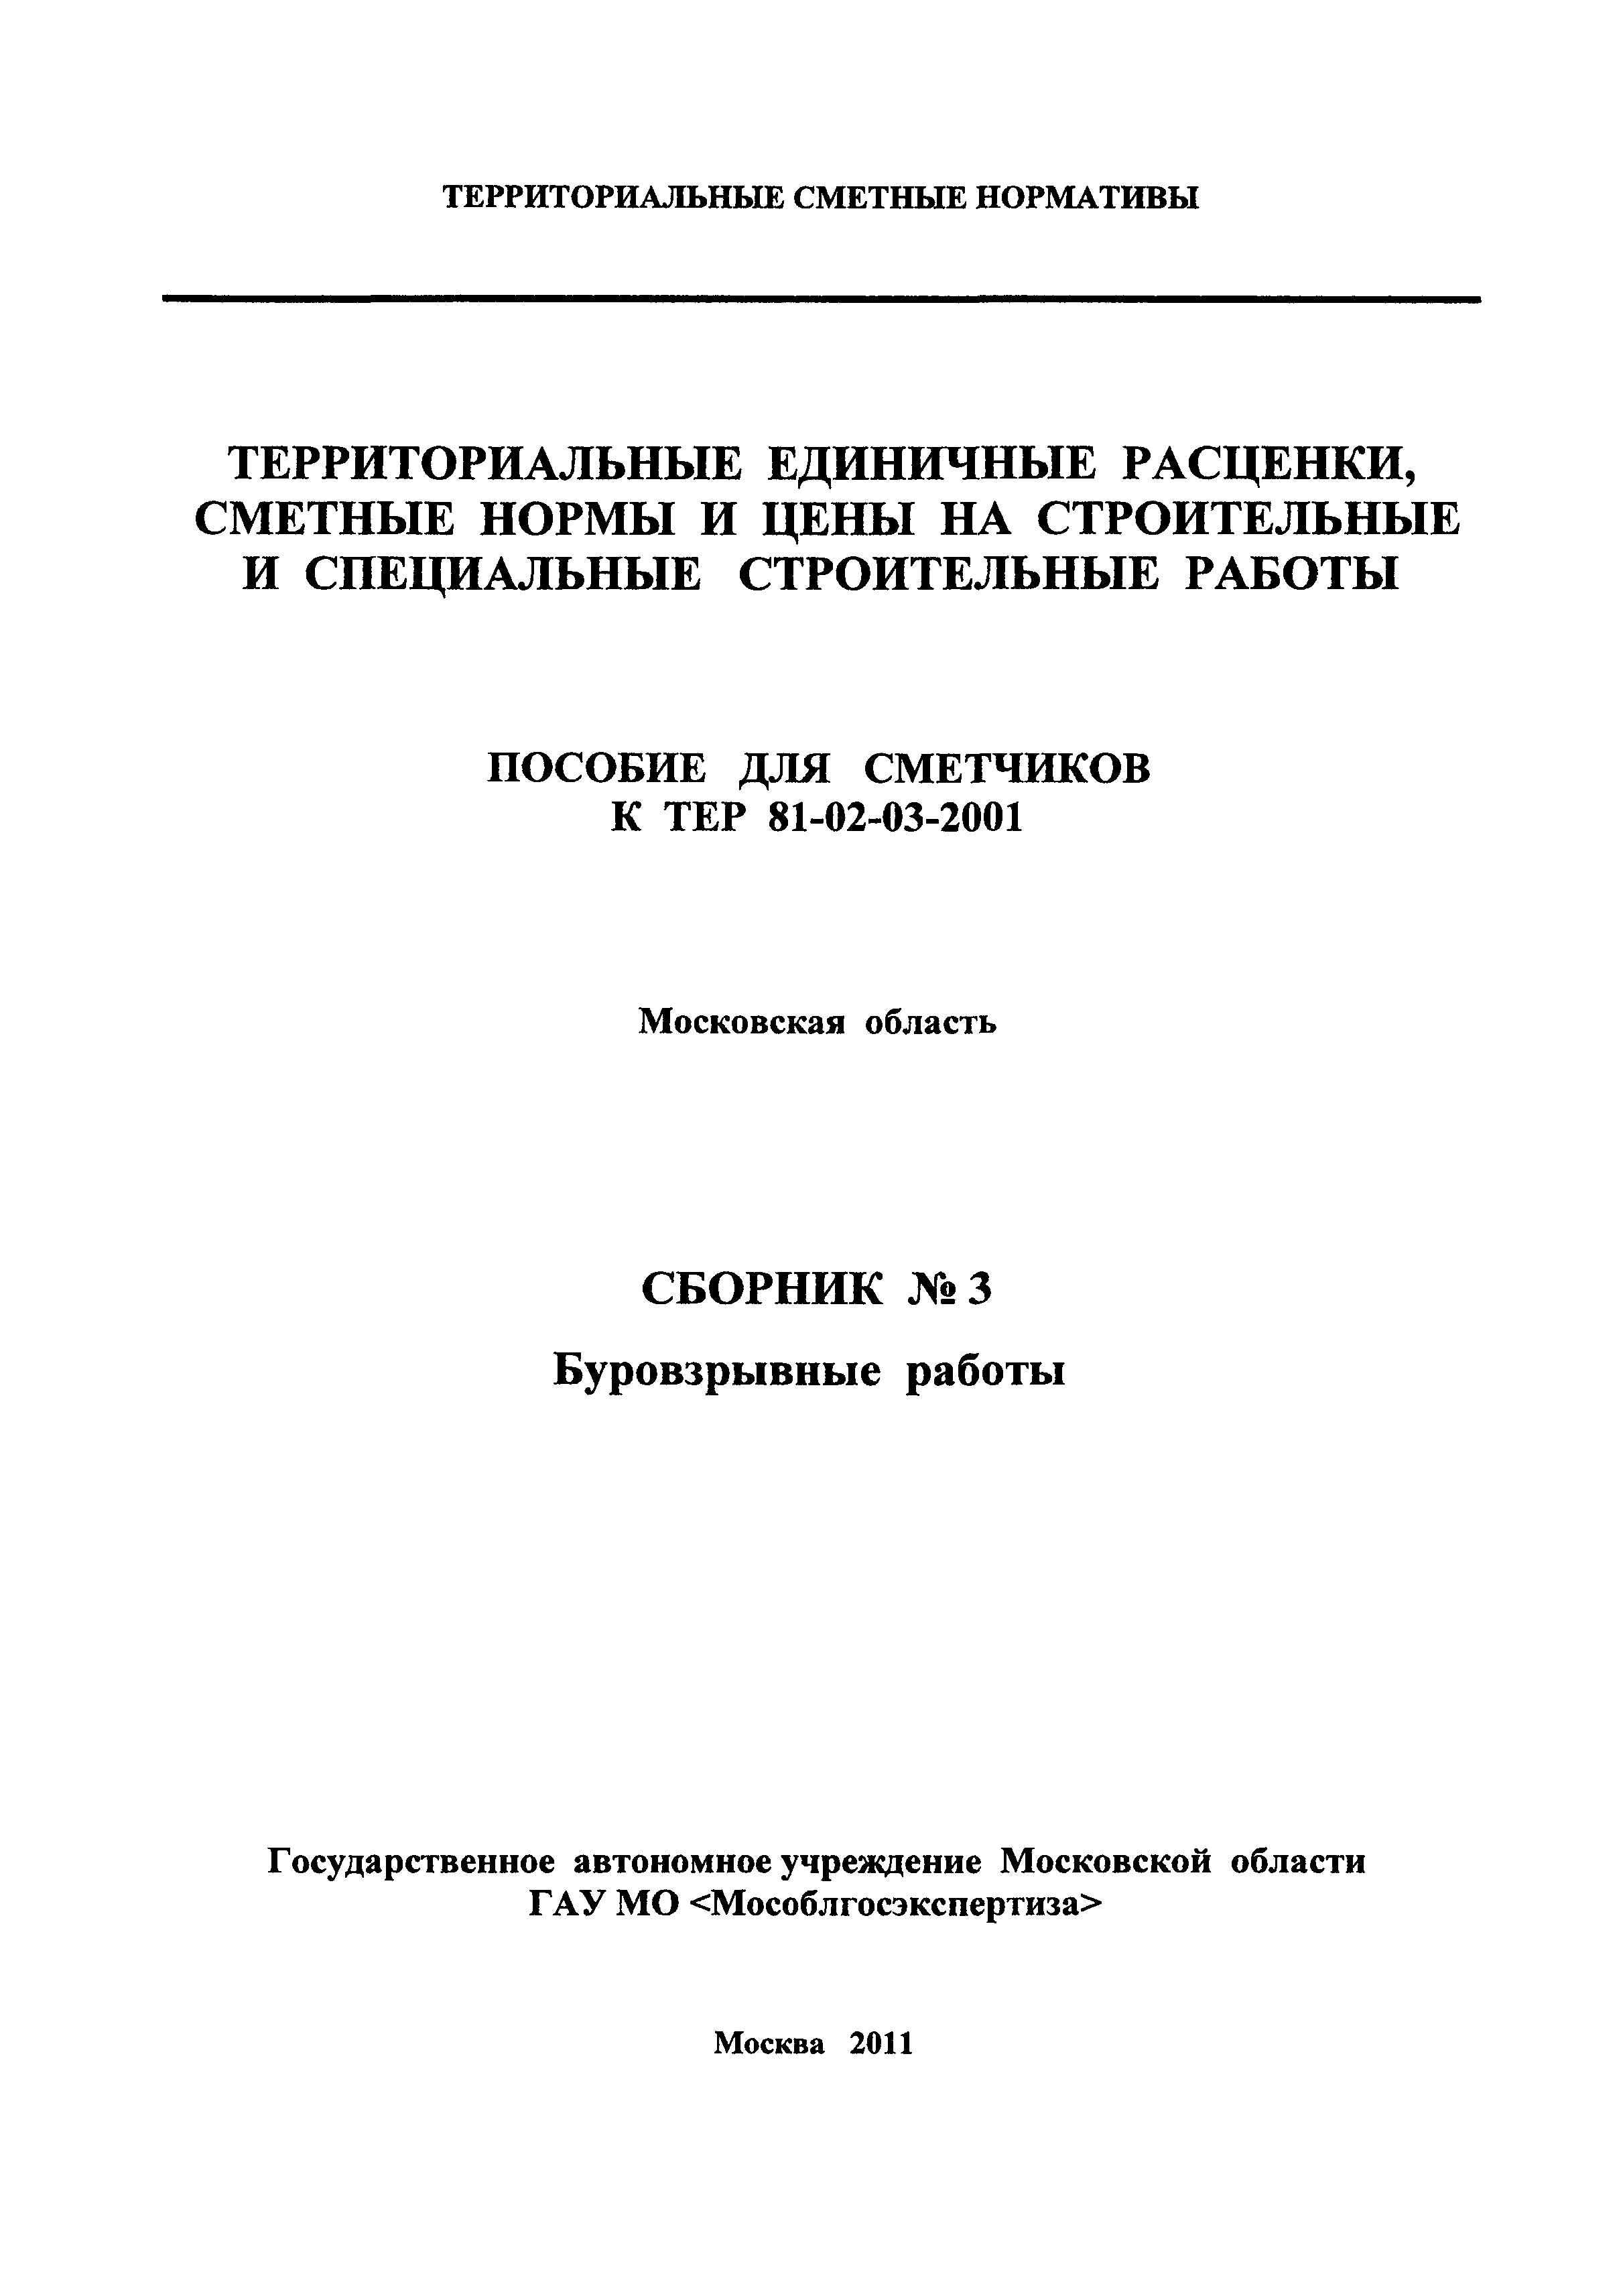 ГЭСНПиТЕР 2001-3 Московской области